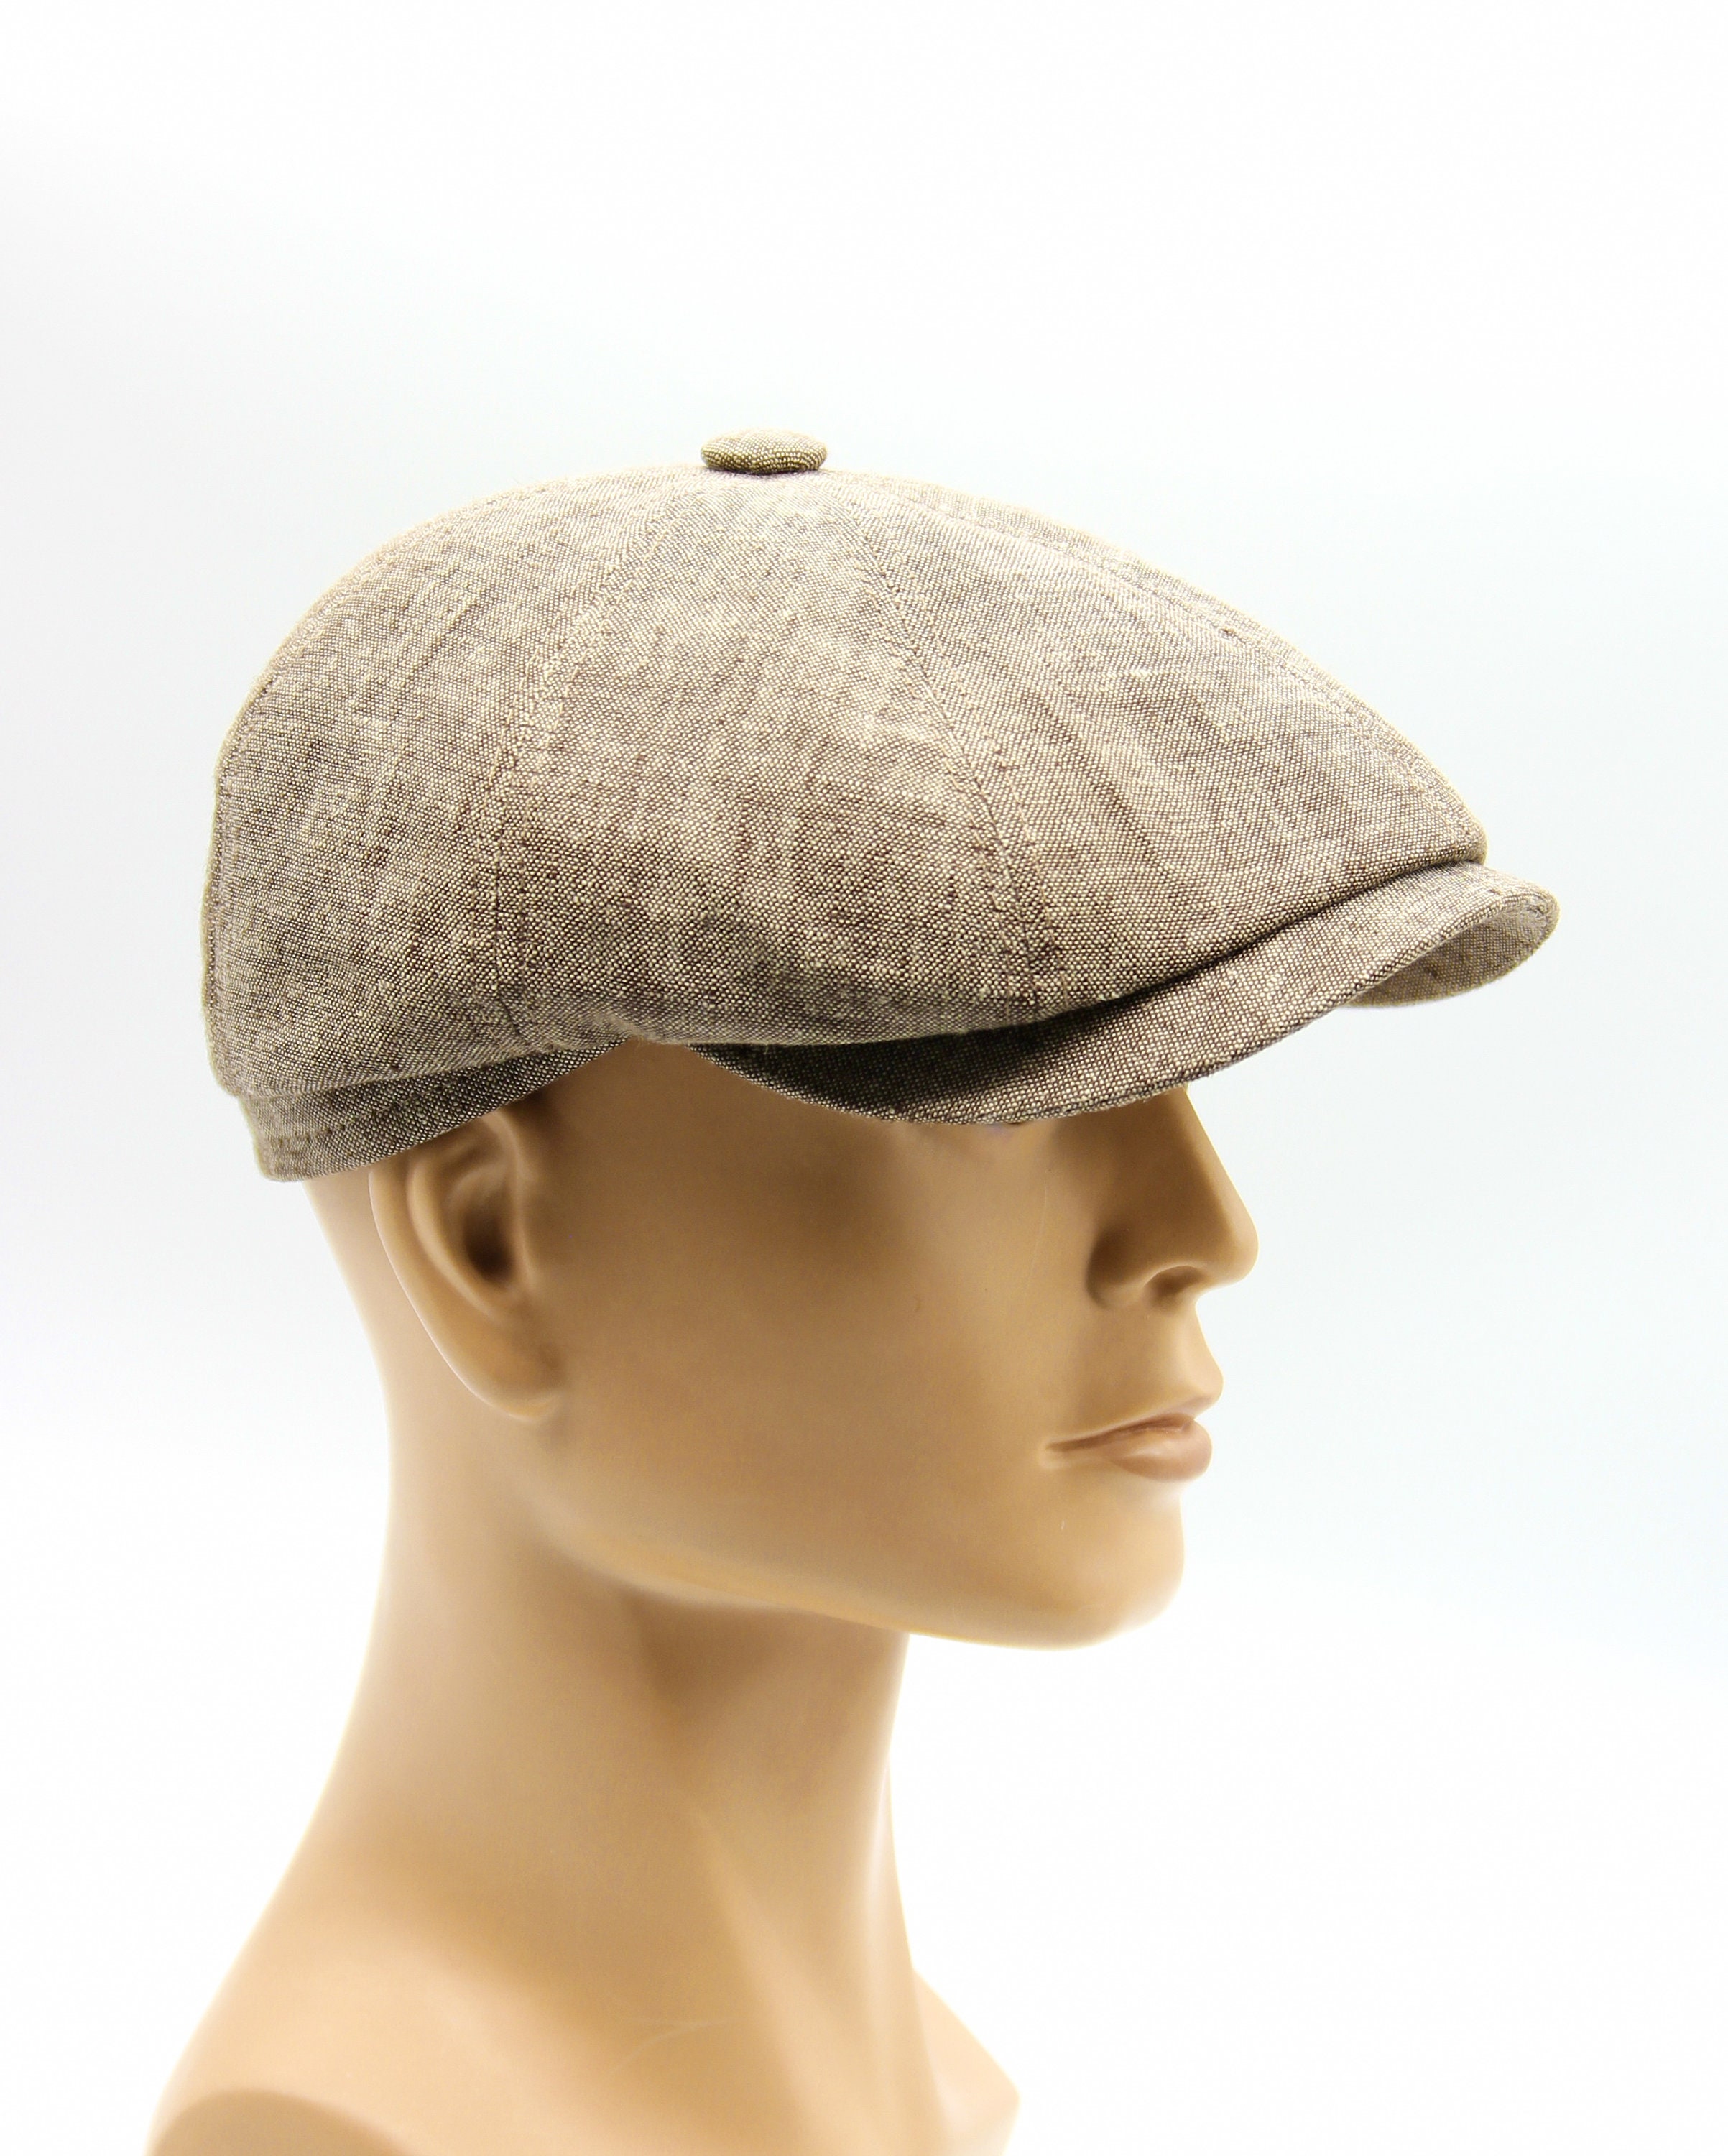 Men's Summer Linen Cap Best Newsboy Hat Light Brown - Etsy